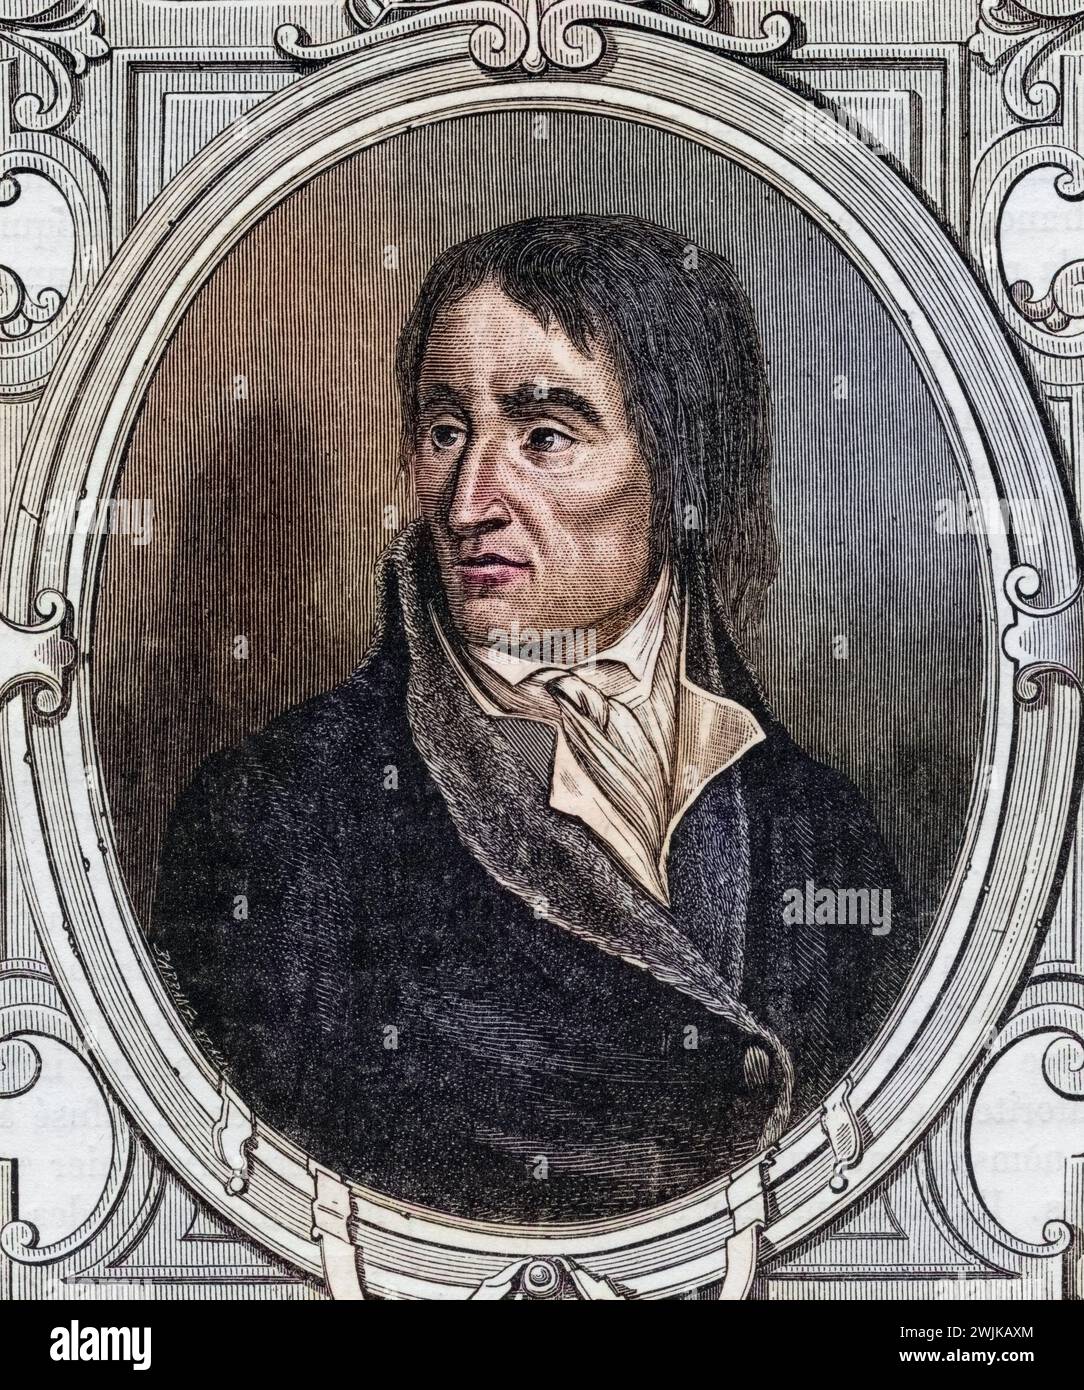 Jean-Baptiste Carrier (geb. 16. März 1756 in Yolet bei Aurillac; Std. 16. Dezember 1794 in Paris) war ein französischer Revolutionär und Mitglied des französischen Nationalkonvents, Historisch, digital restaurierte Reproduktion von einer Vorlage aus dem 19. Jahrhundert, Datum nicht angegeben Stockfoto